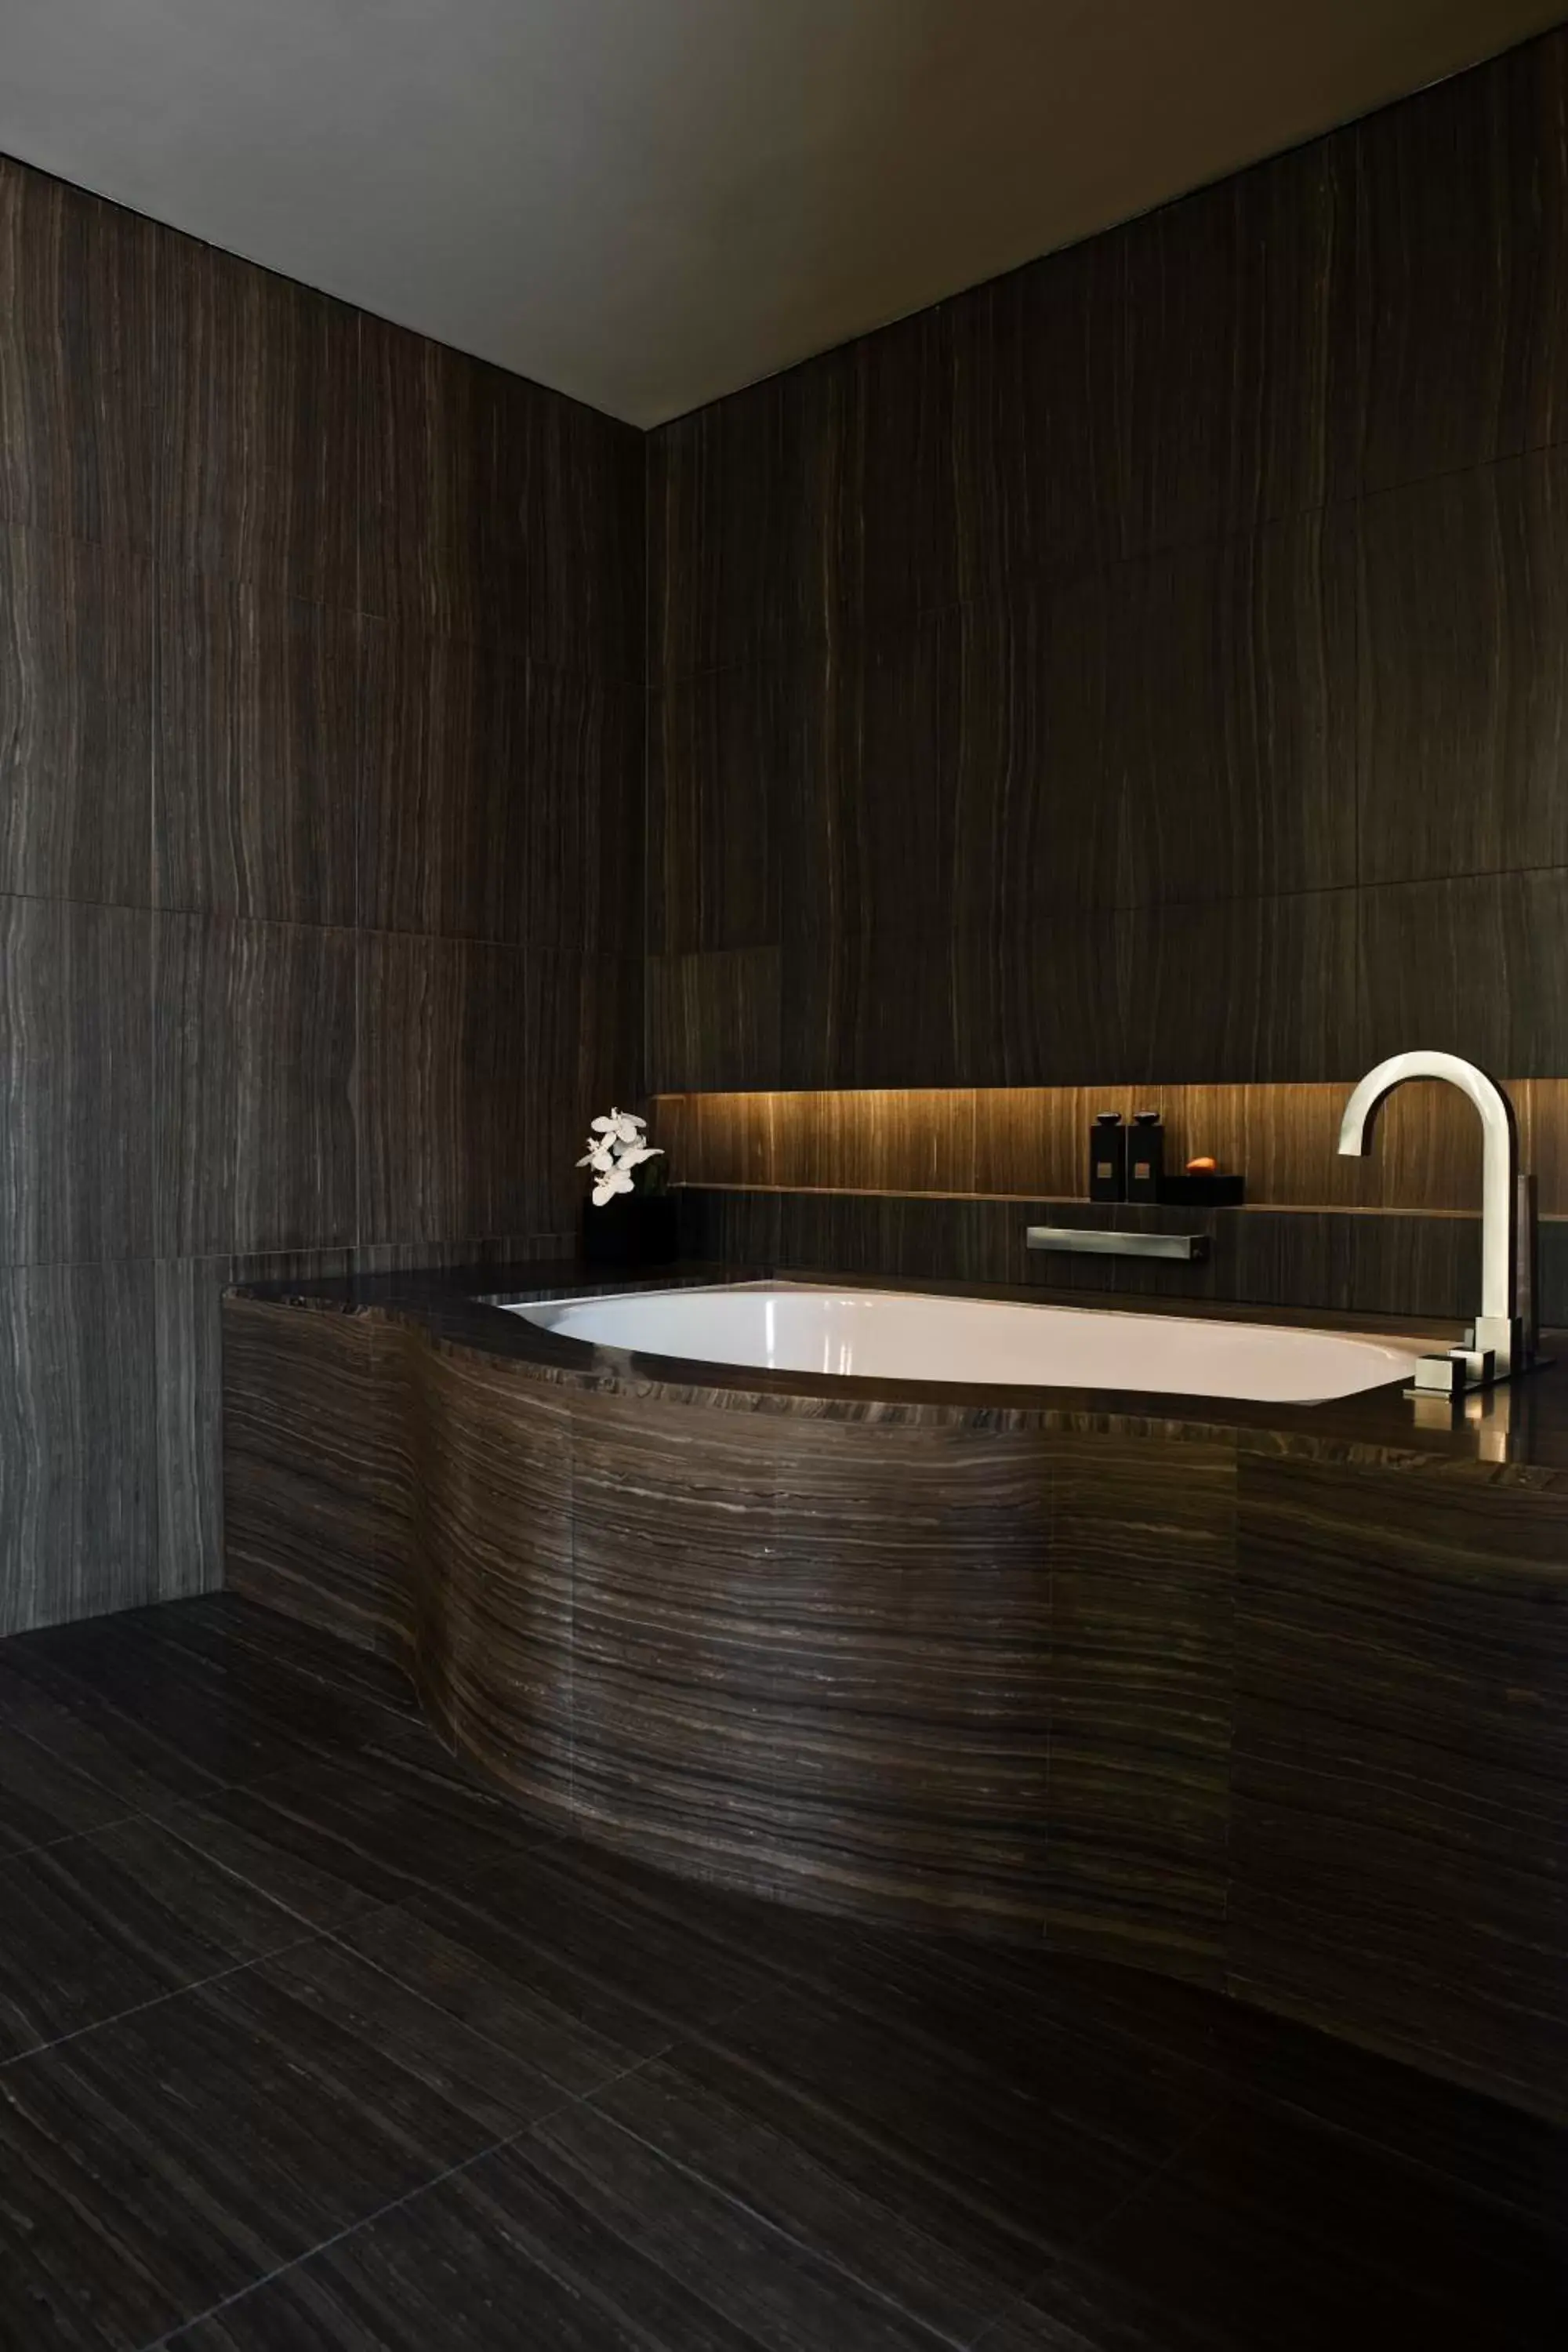 Area and facilities, Bathroom in Armani Hotel Dubai